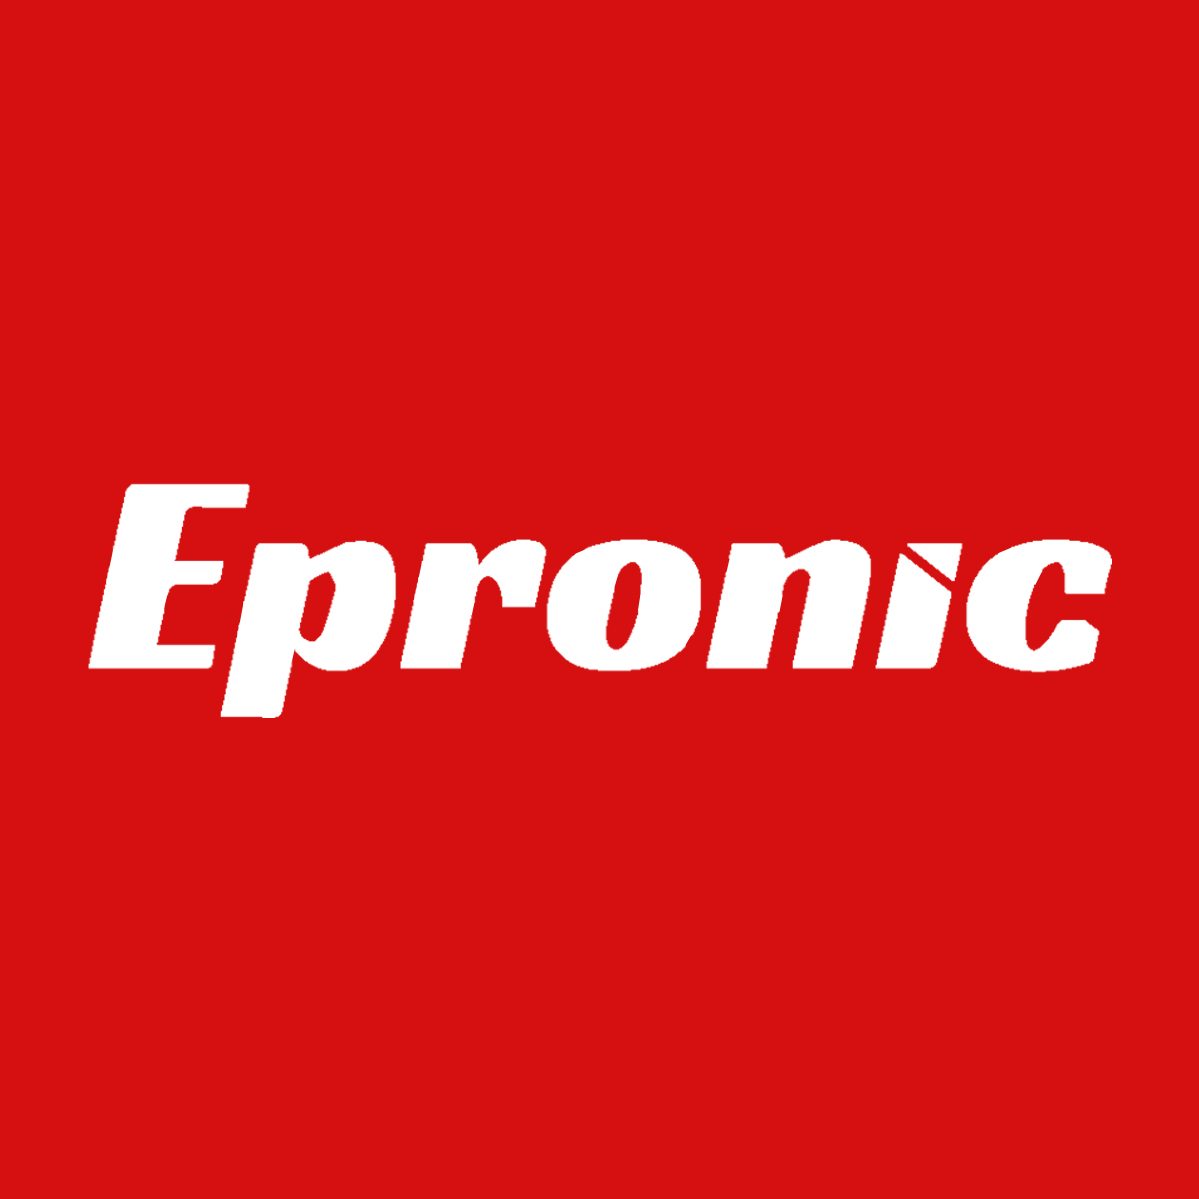 Epronic